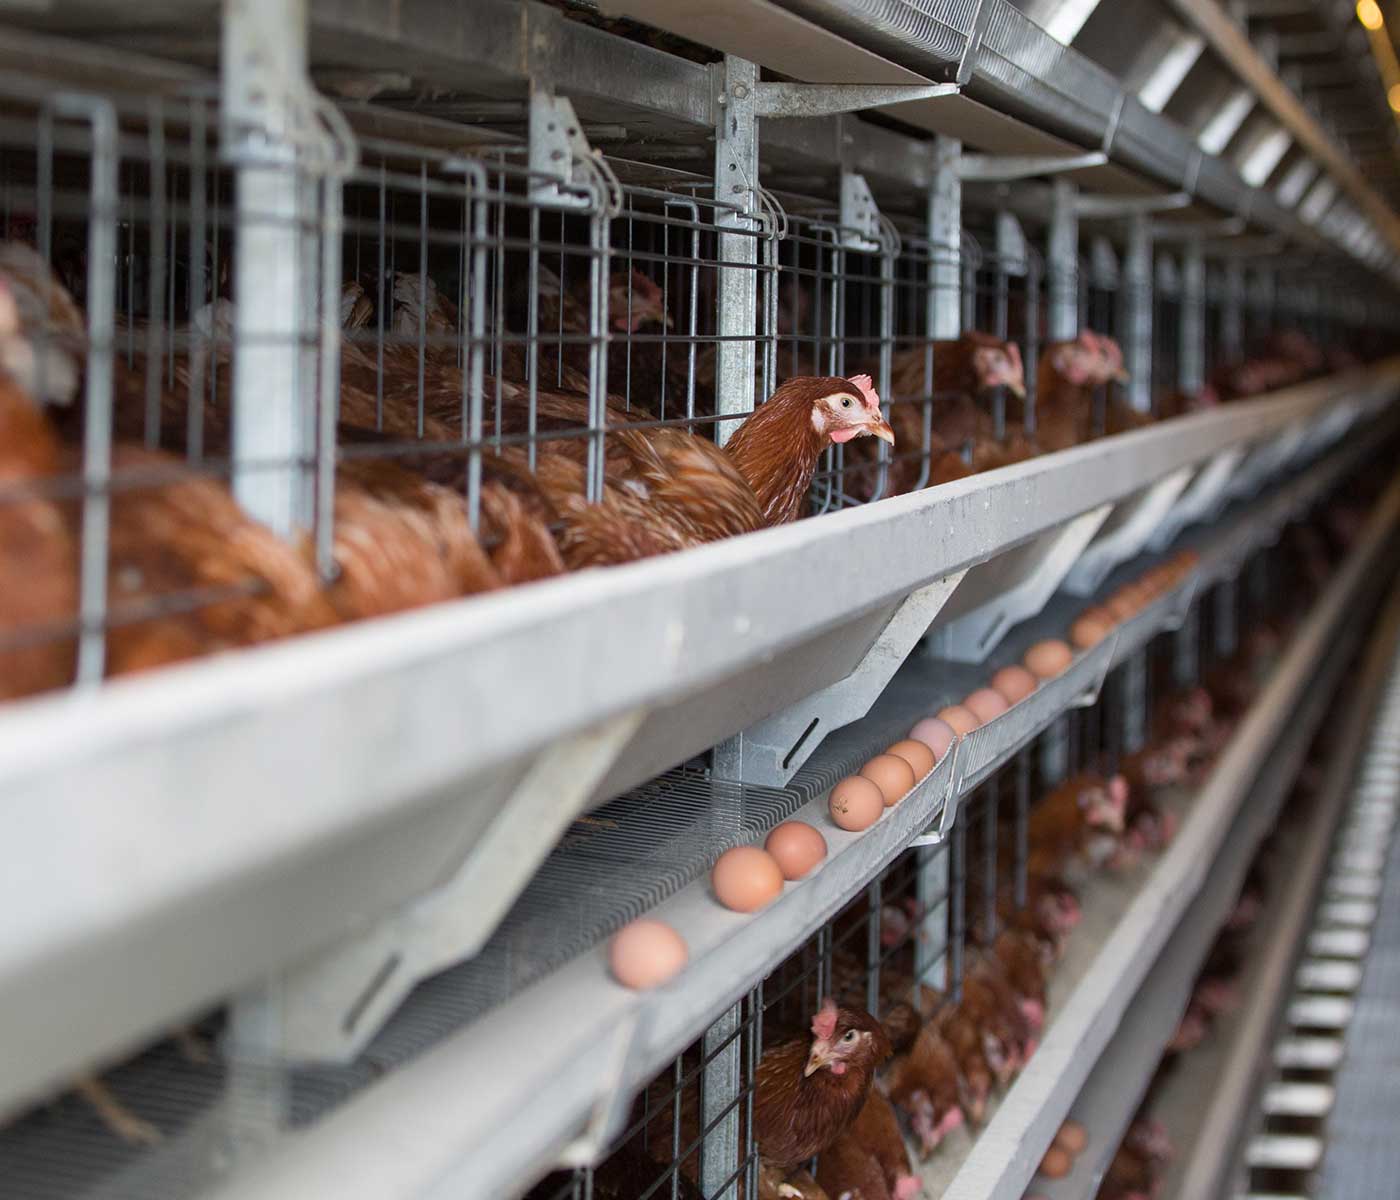 Puntos críticos en la nutrición de gallinas ponedoras